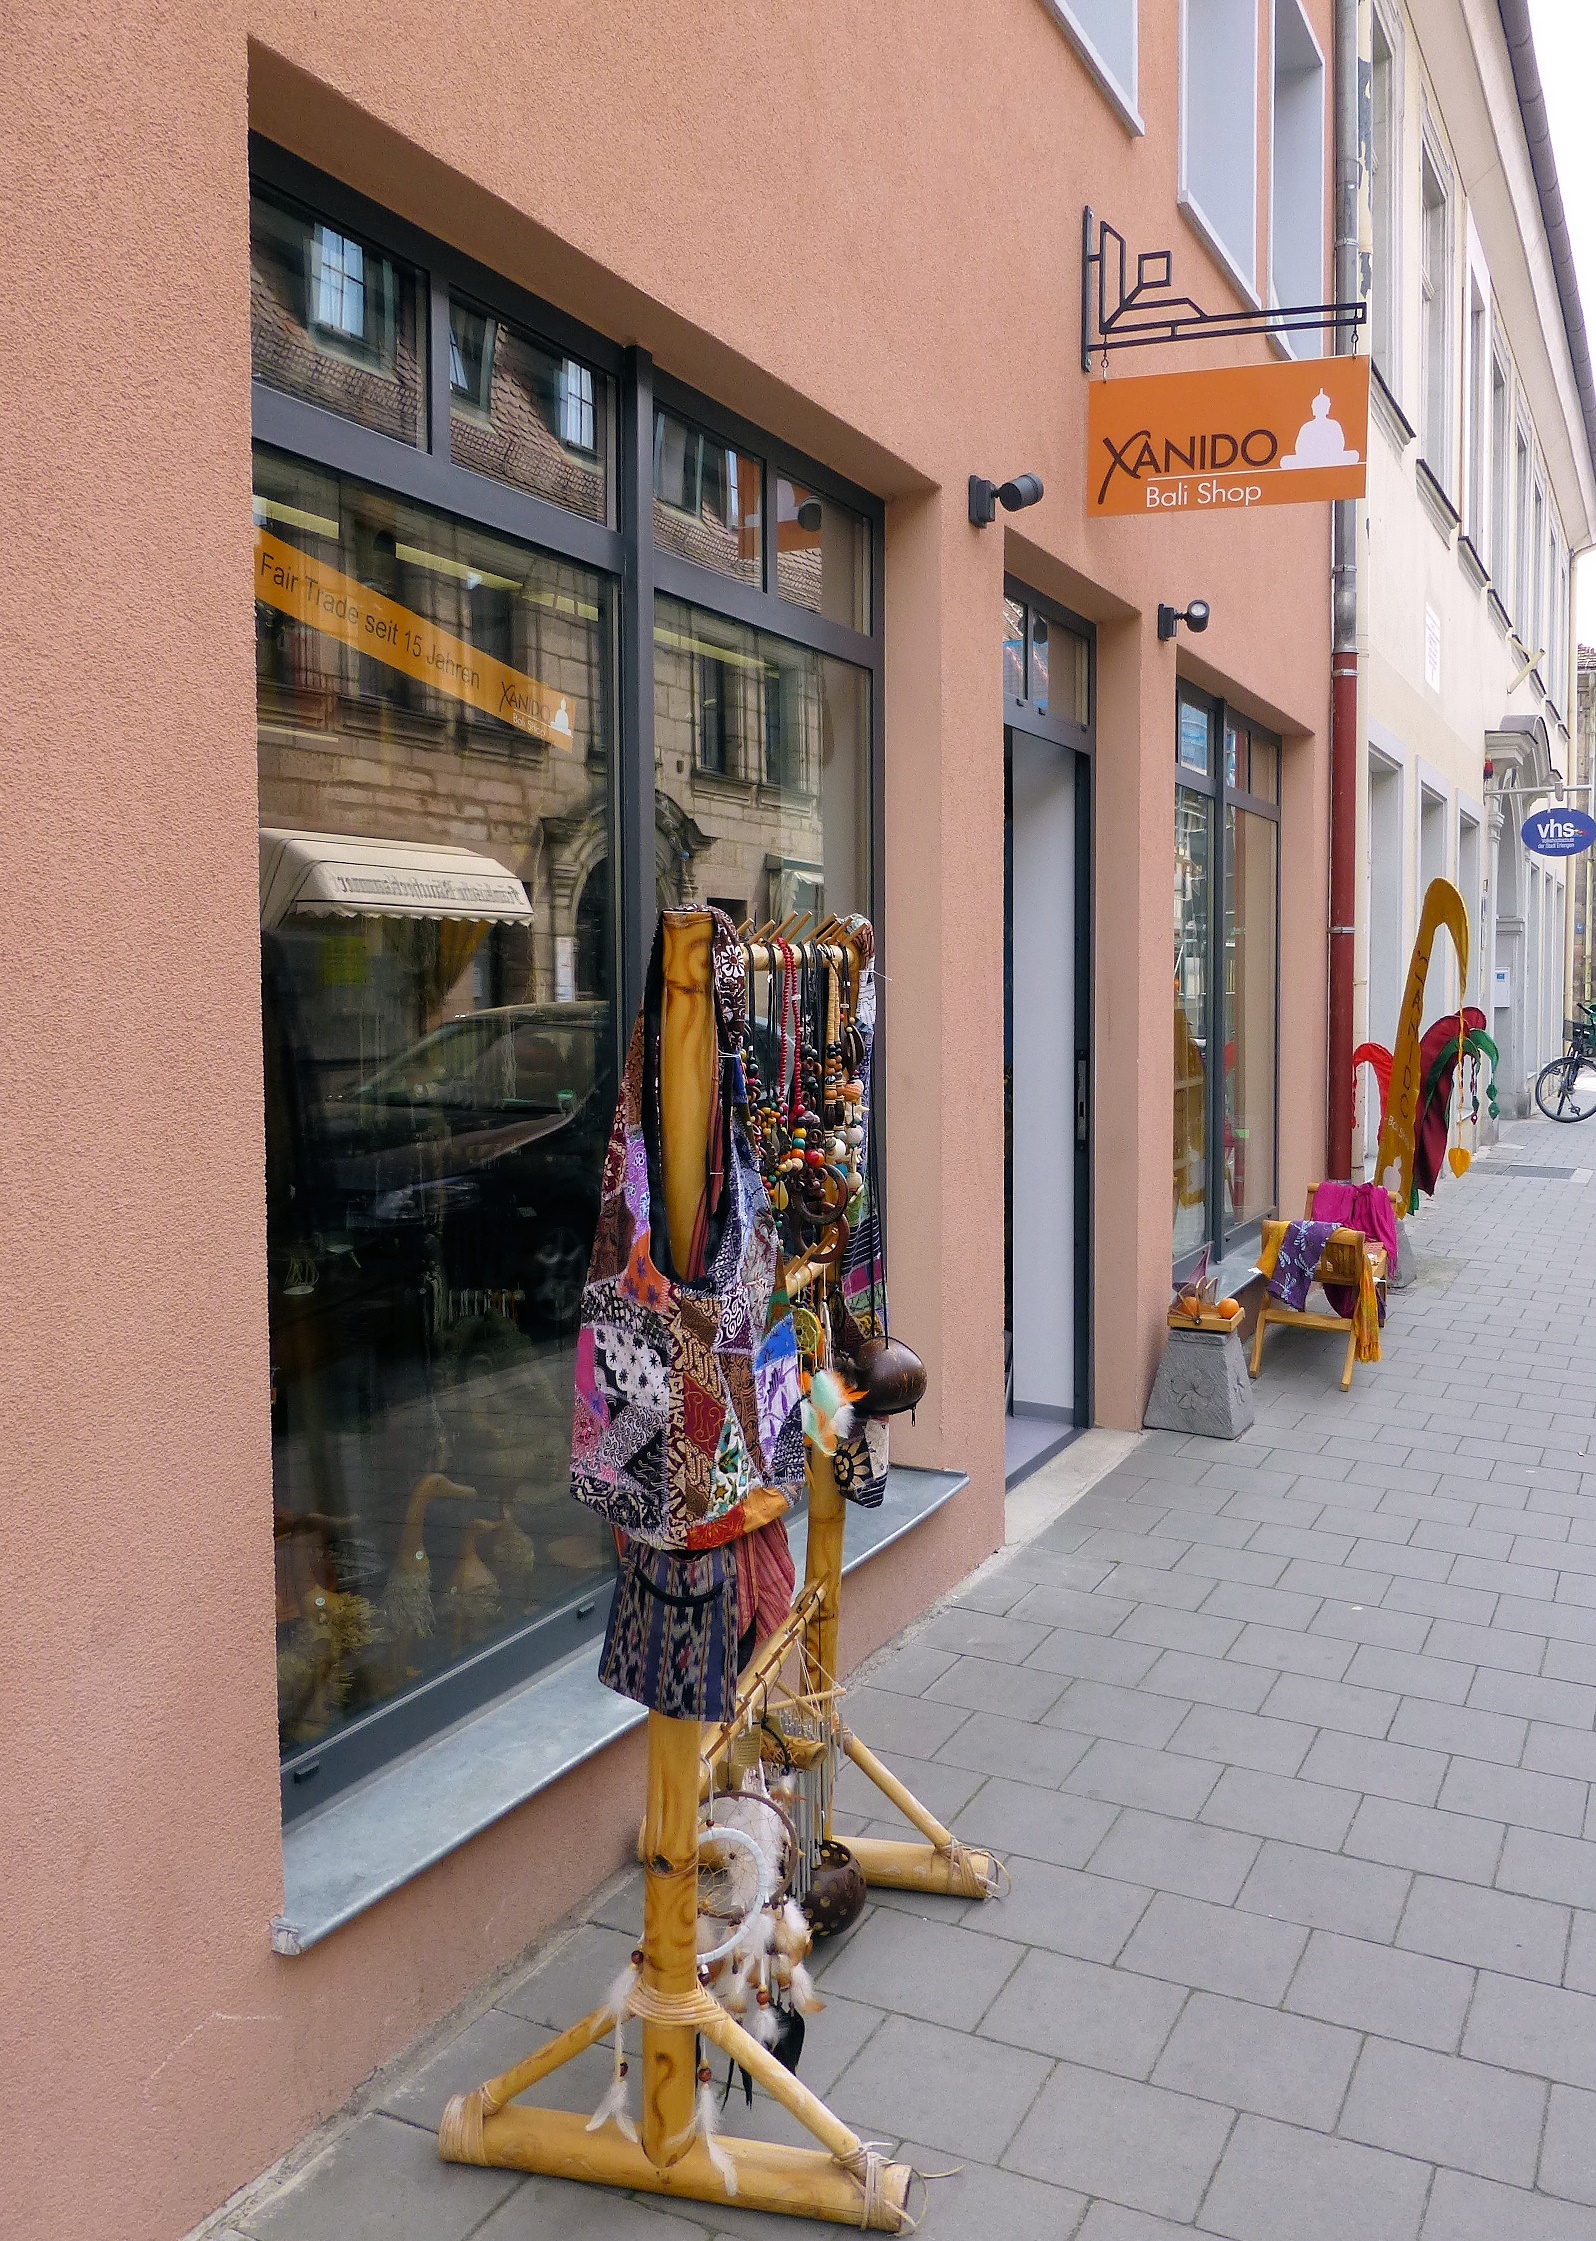 Bild 1 Bali-Shop-Xandio in Erlangen